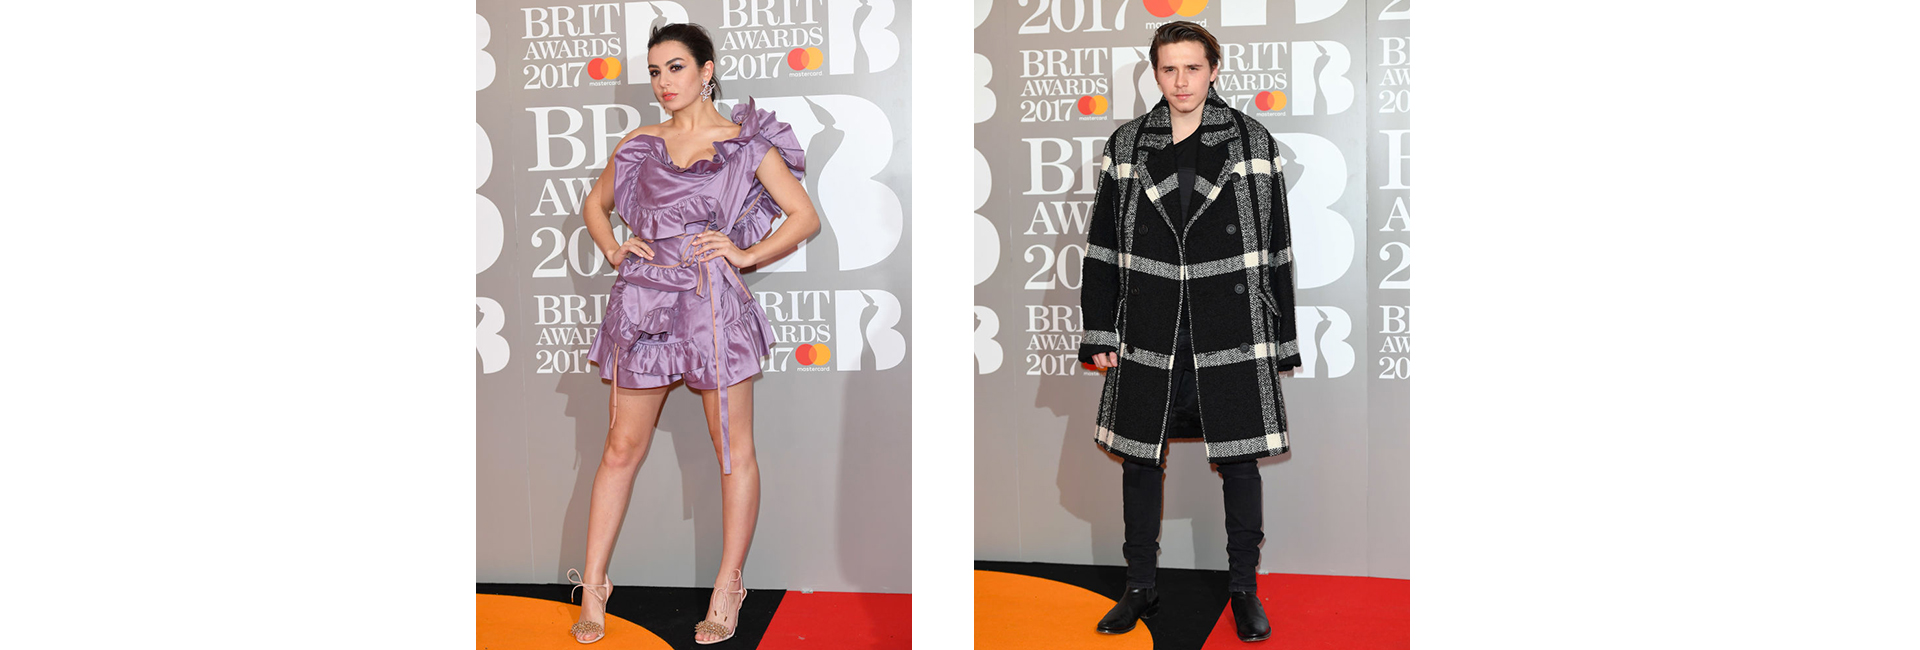 Brit Awards 2017: итоги церемонии и гости вечера (фото 4)